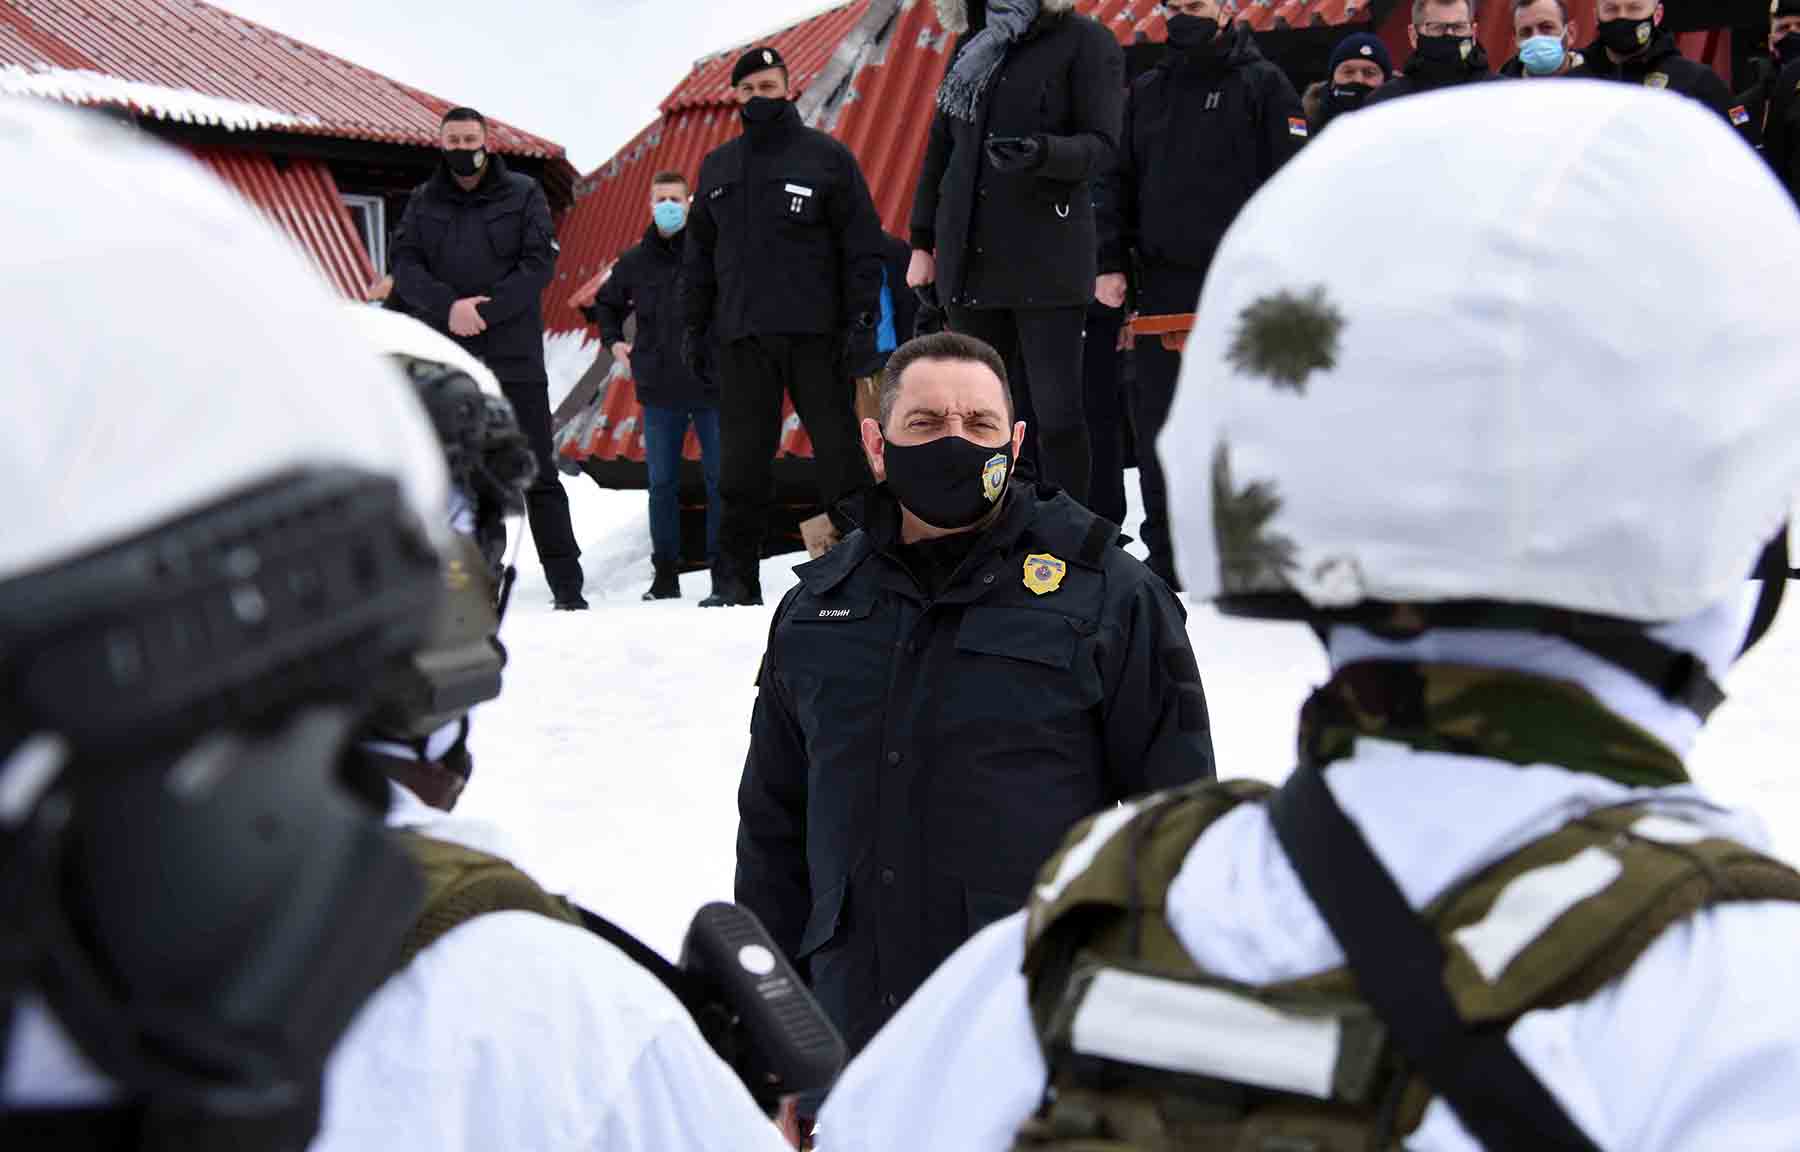 Здружена антитерористичка вежба на Копаонику - полиција спремна да реши сваку кризну ситуацију